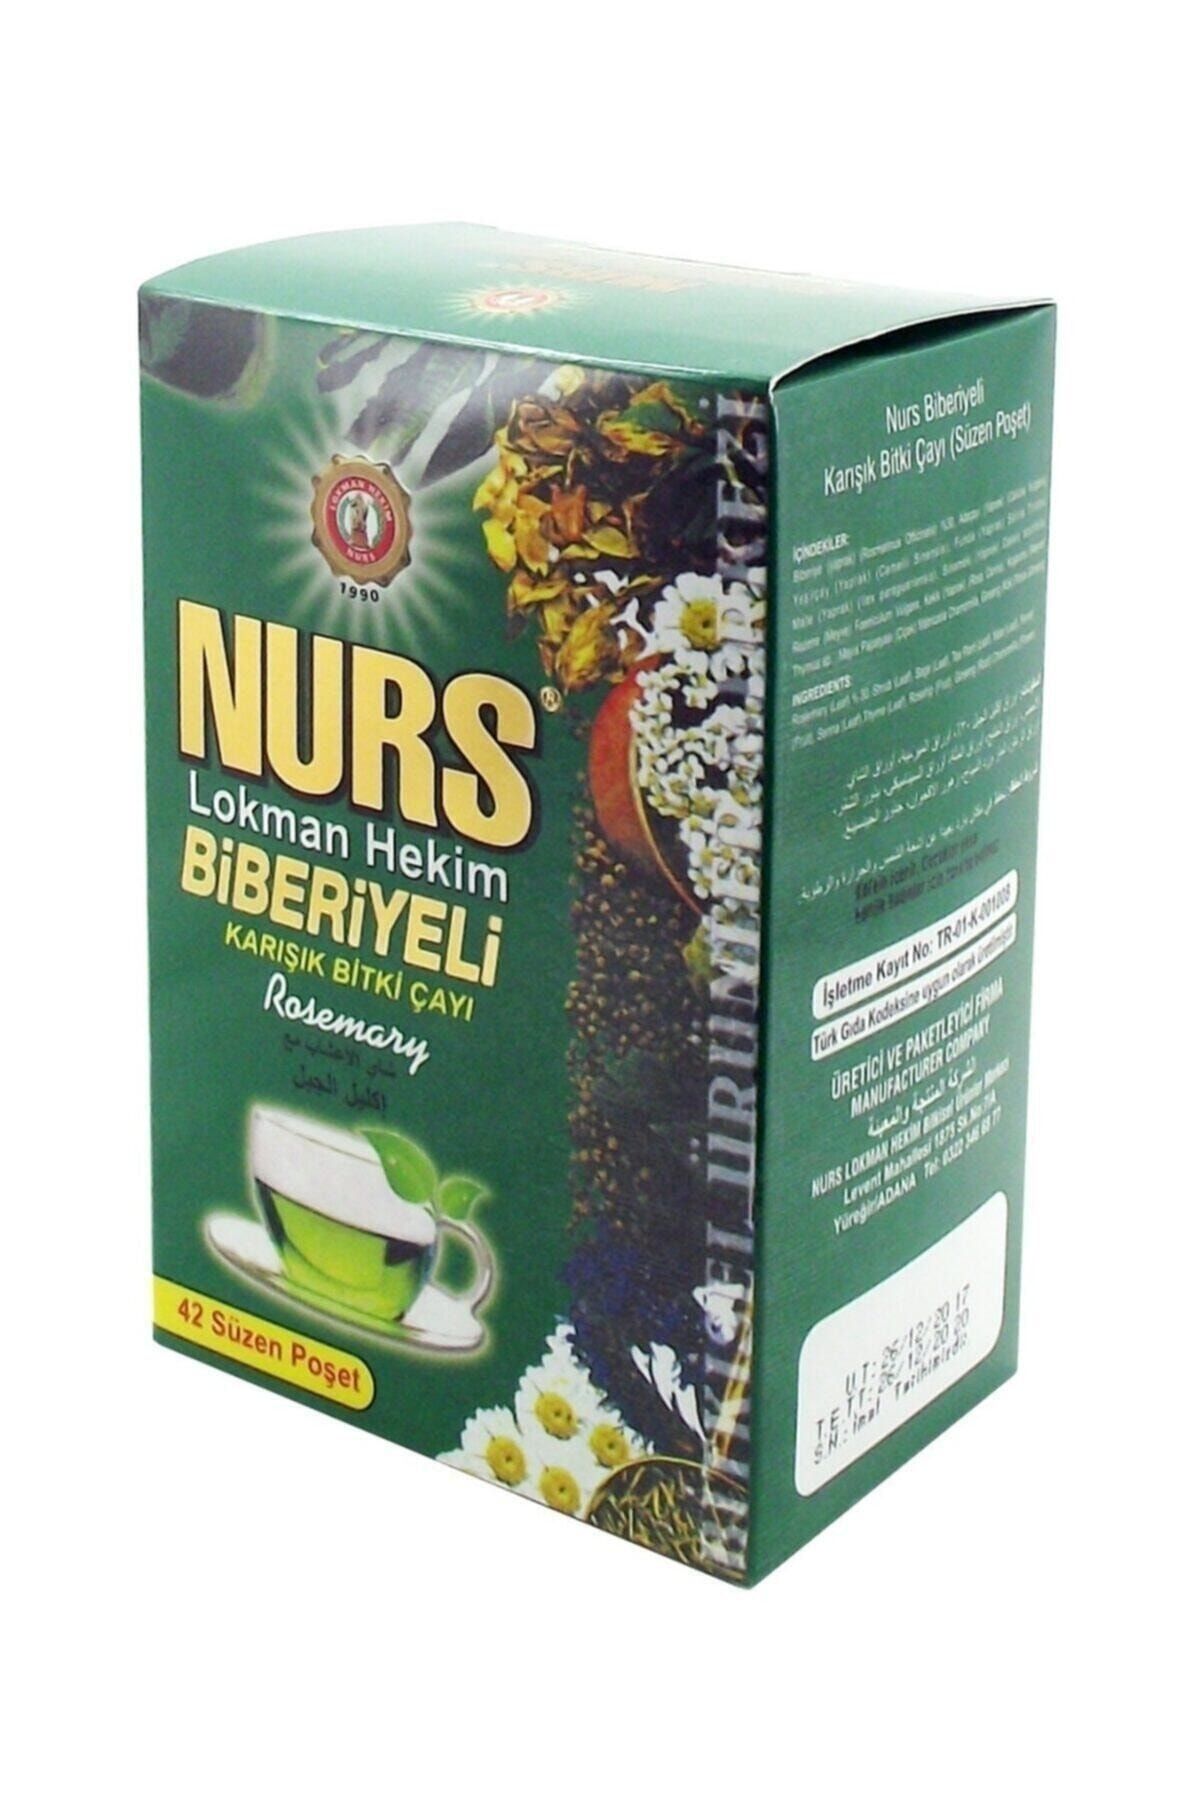 Nurs Lokman Hekim Biberiyeli Karışık Bitki Çayı 42 Adet Süzen Poşet 1 Paket